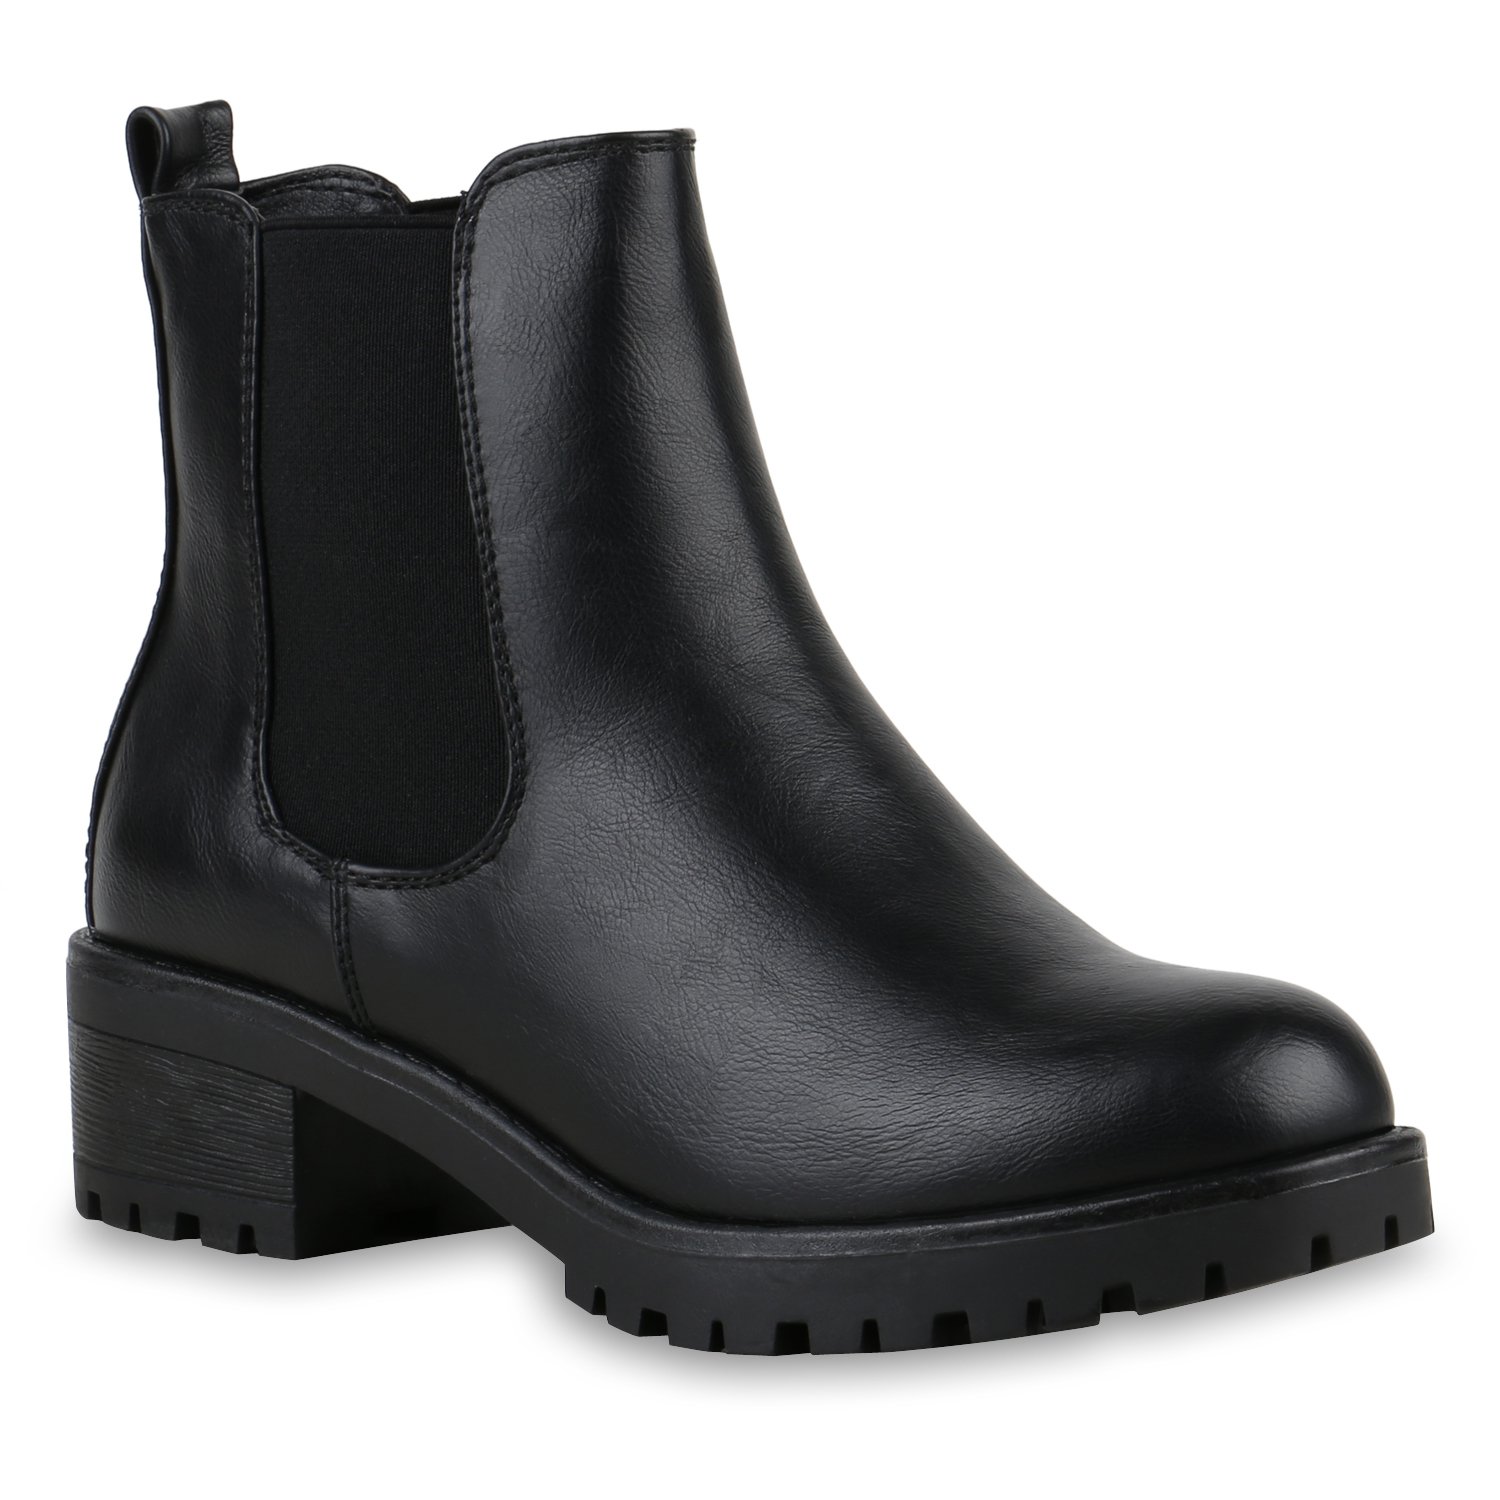 Stiefeletten Damen Chelsea Boots Profilsohle Blockabsatz Leder-Optik Booties Schuhe 122863 Schwarz 40 Flandell